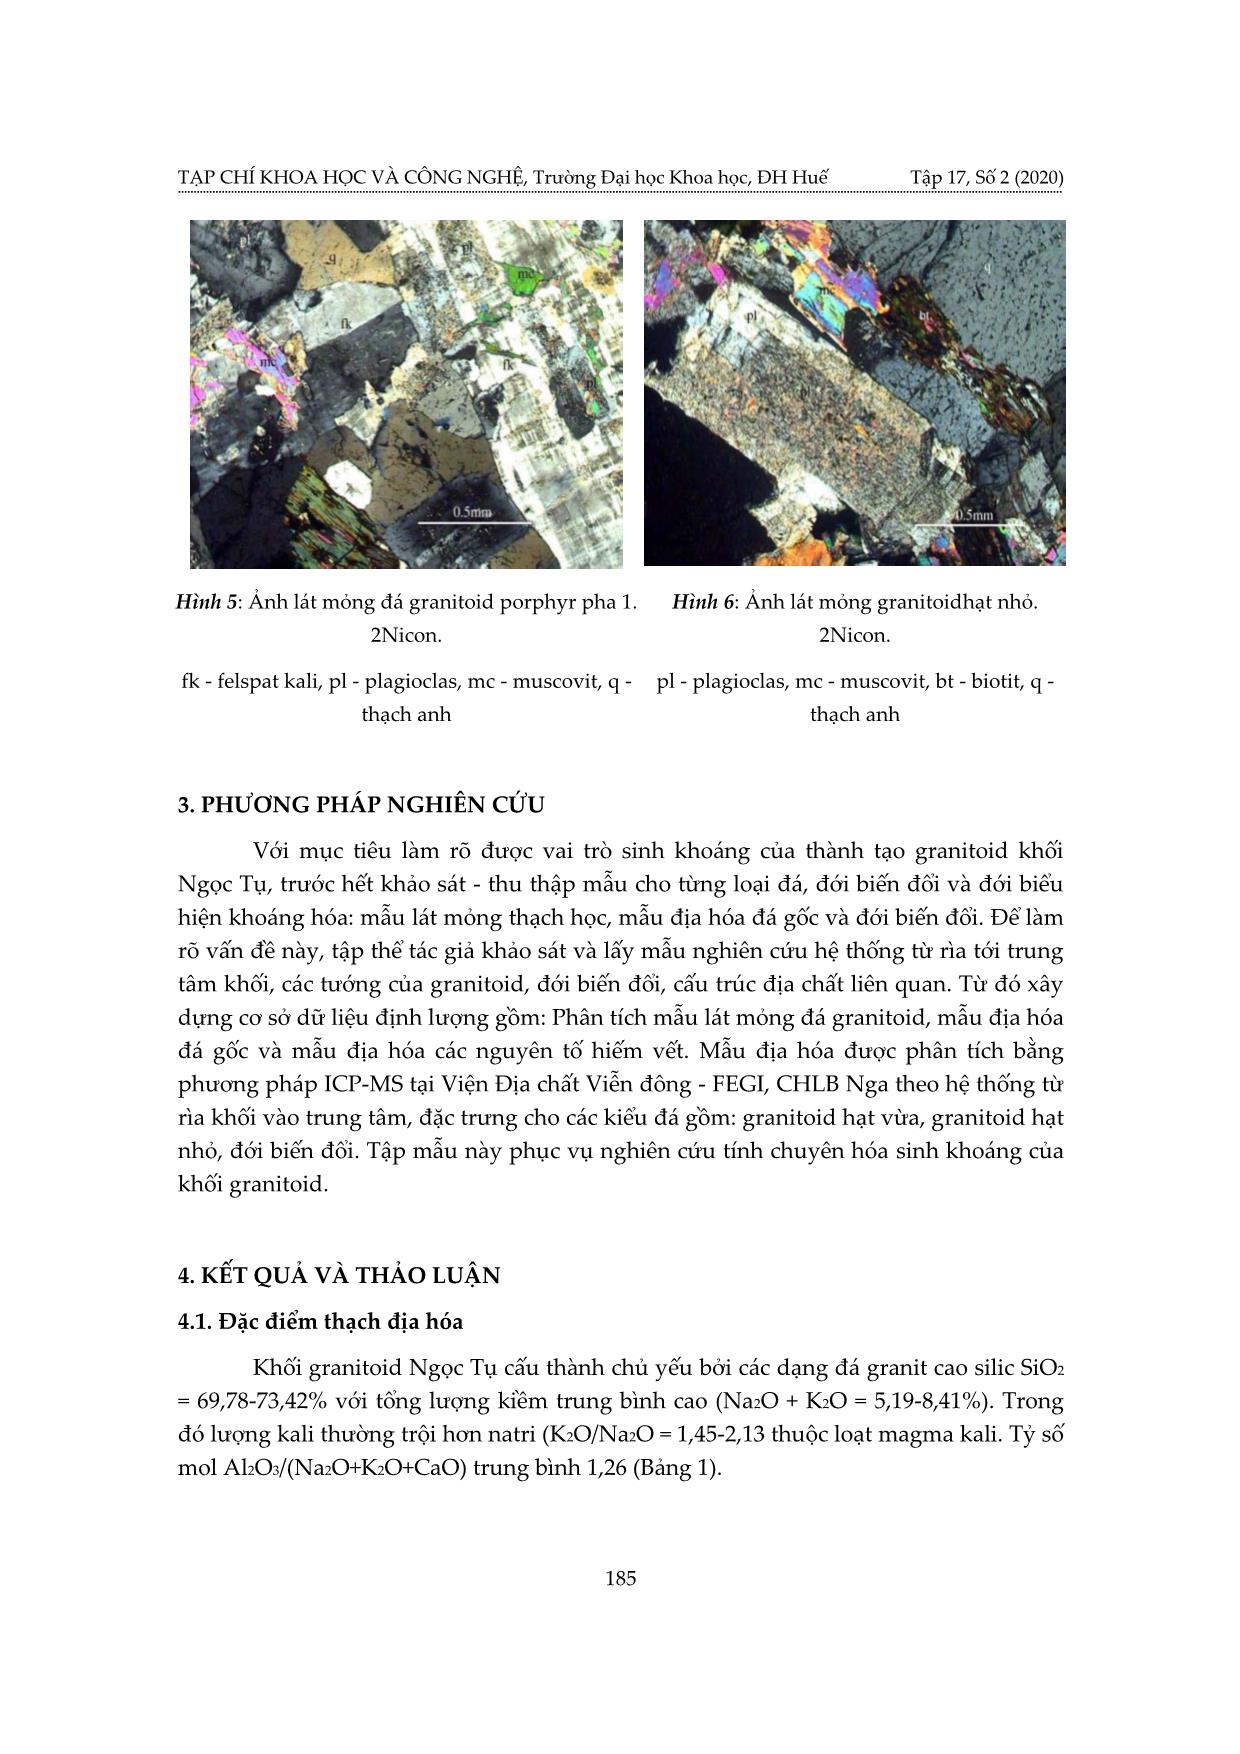 Nghiên cứu tiềm năng sinh khoáng của granitoid khối Ngọc Tụ, Kon Tum trang 5